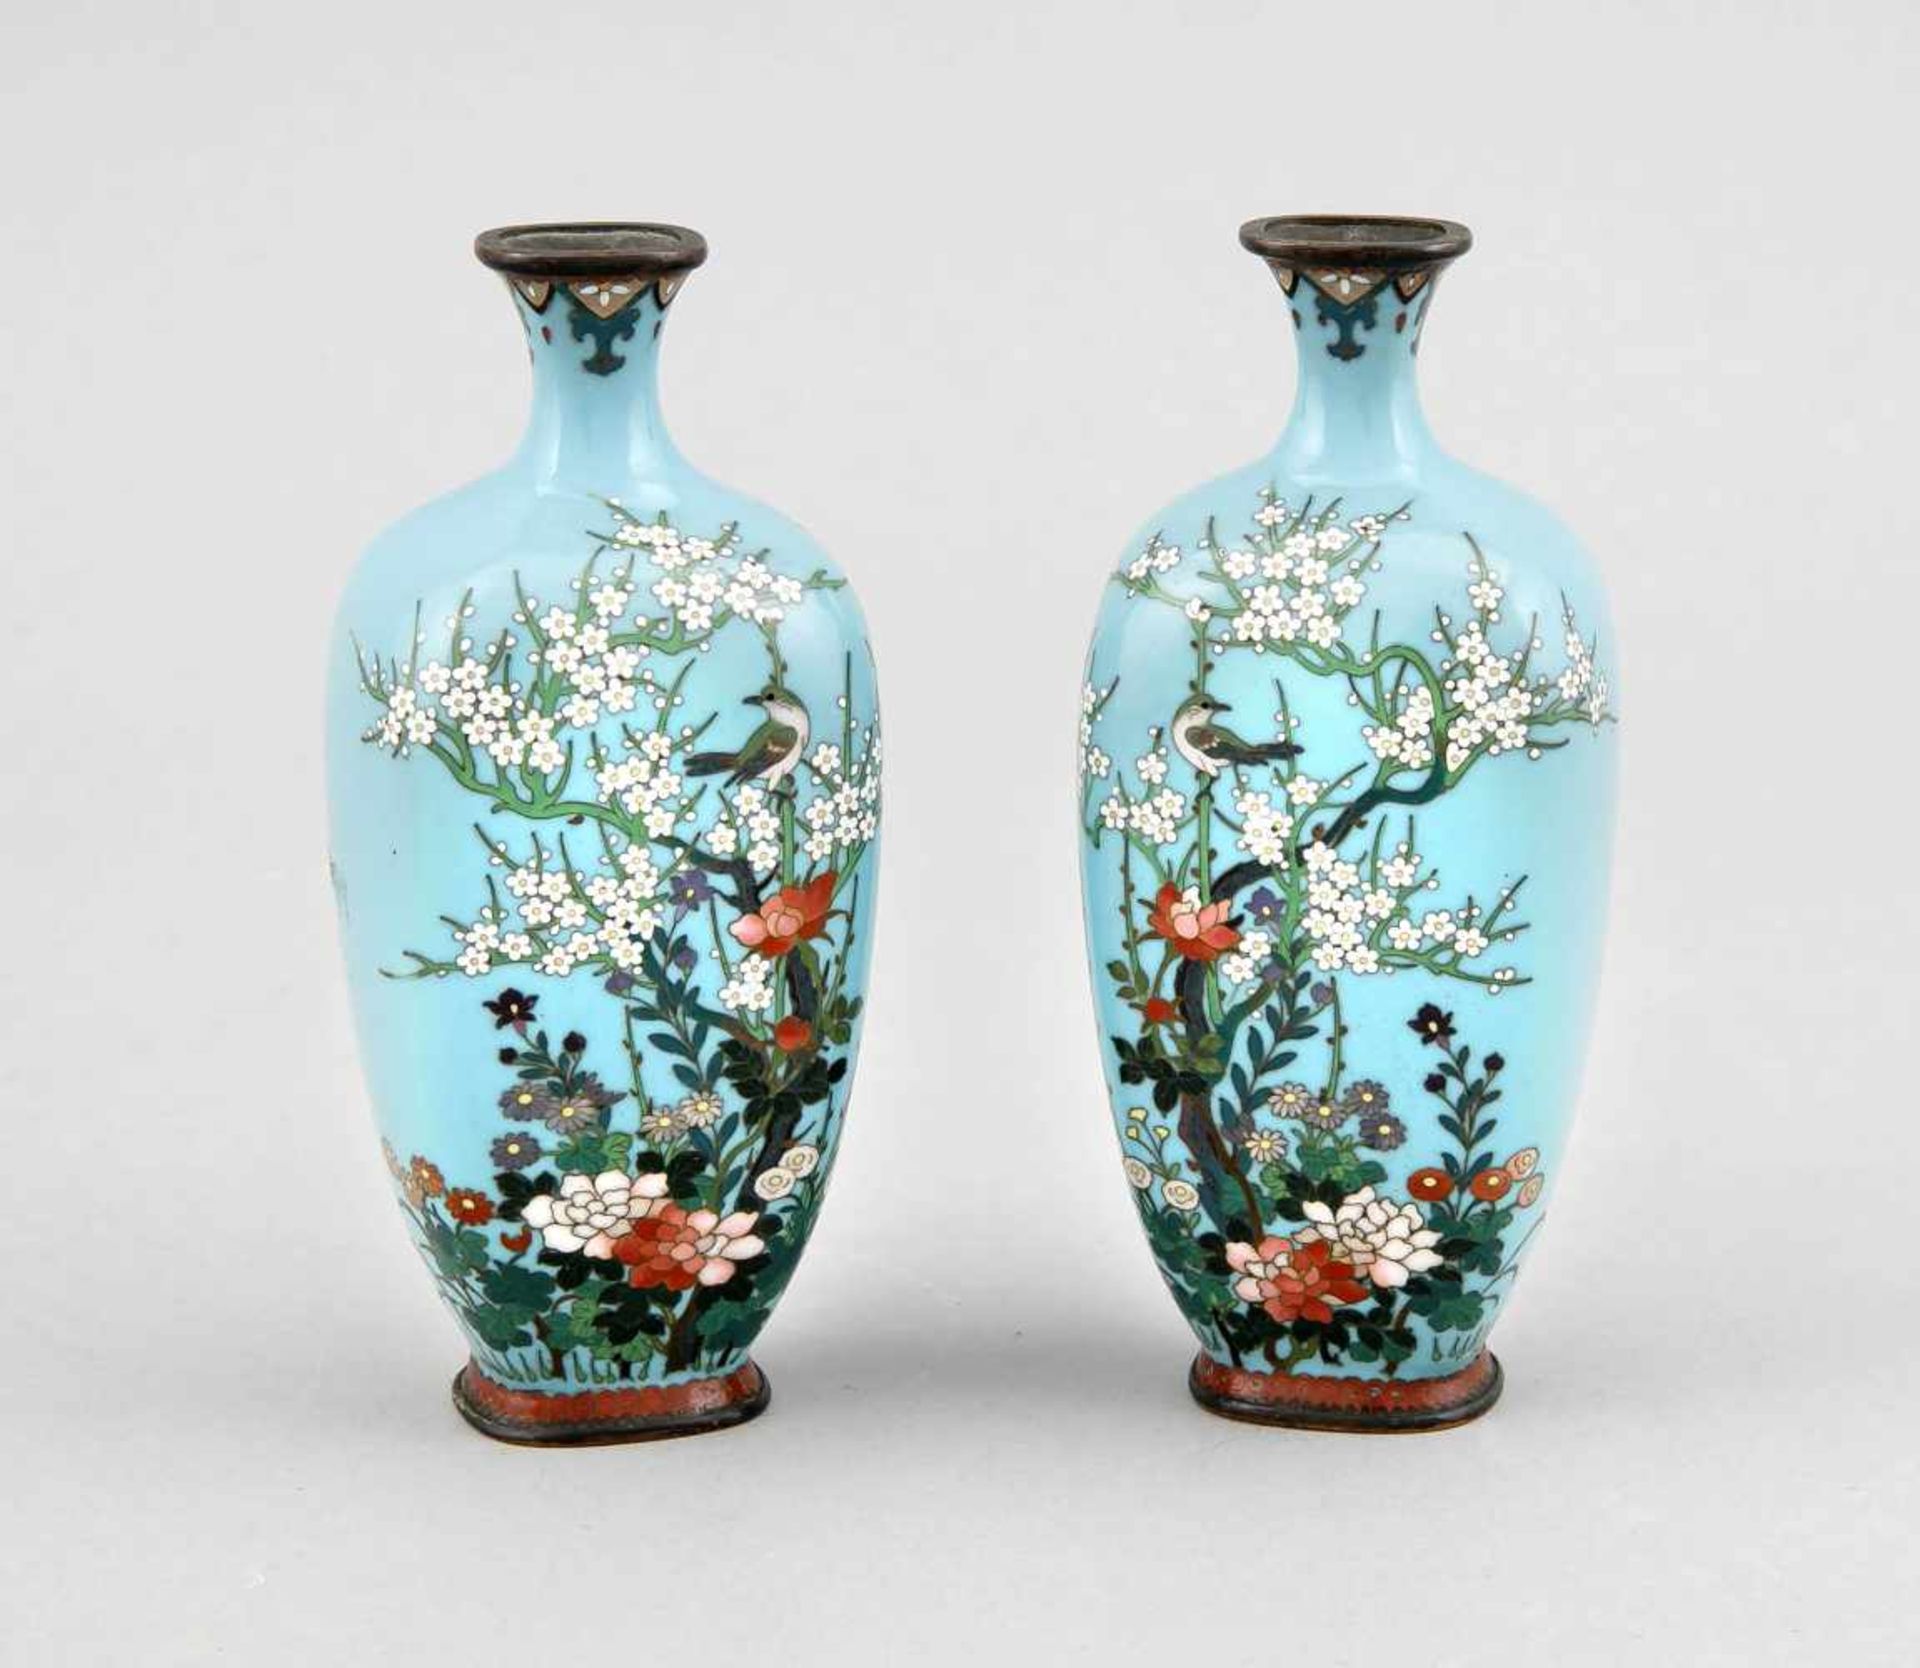 Paar kleine Cloisonné-Vasen, Japan/China, um 1900, Dekor mit kleinem blühenden Baum(Pflaume?),